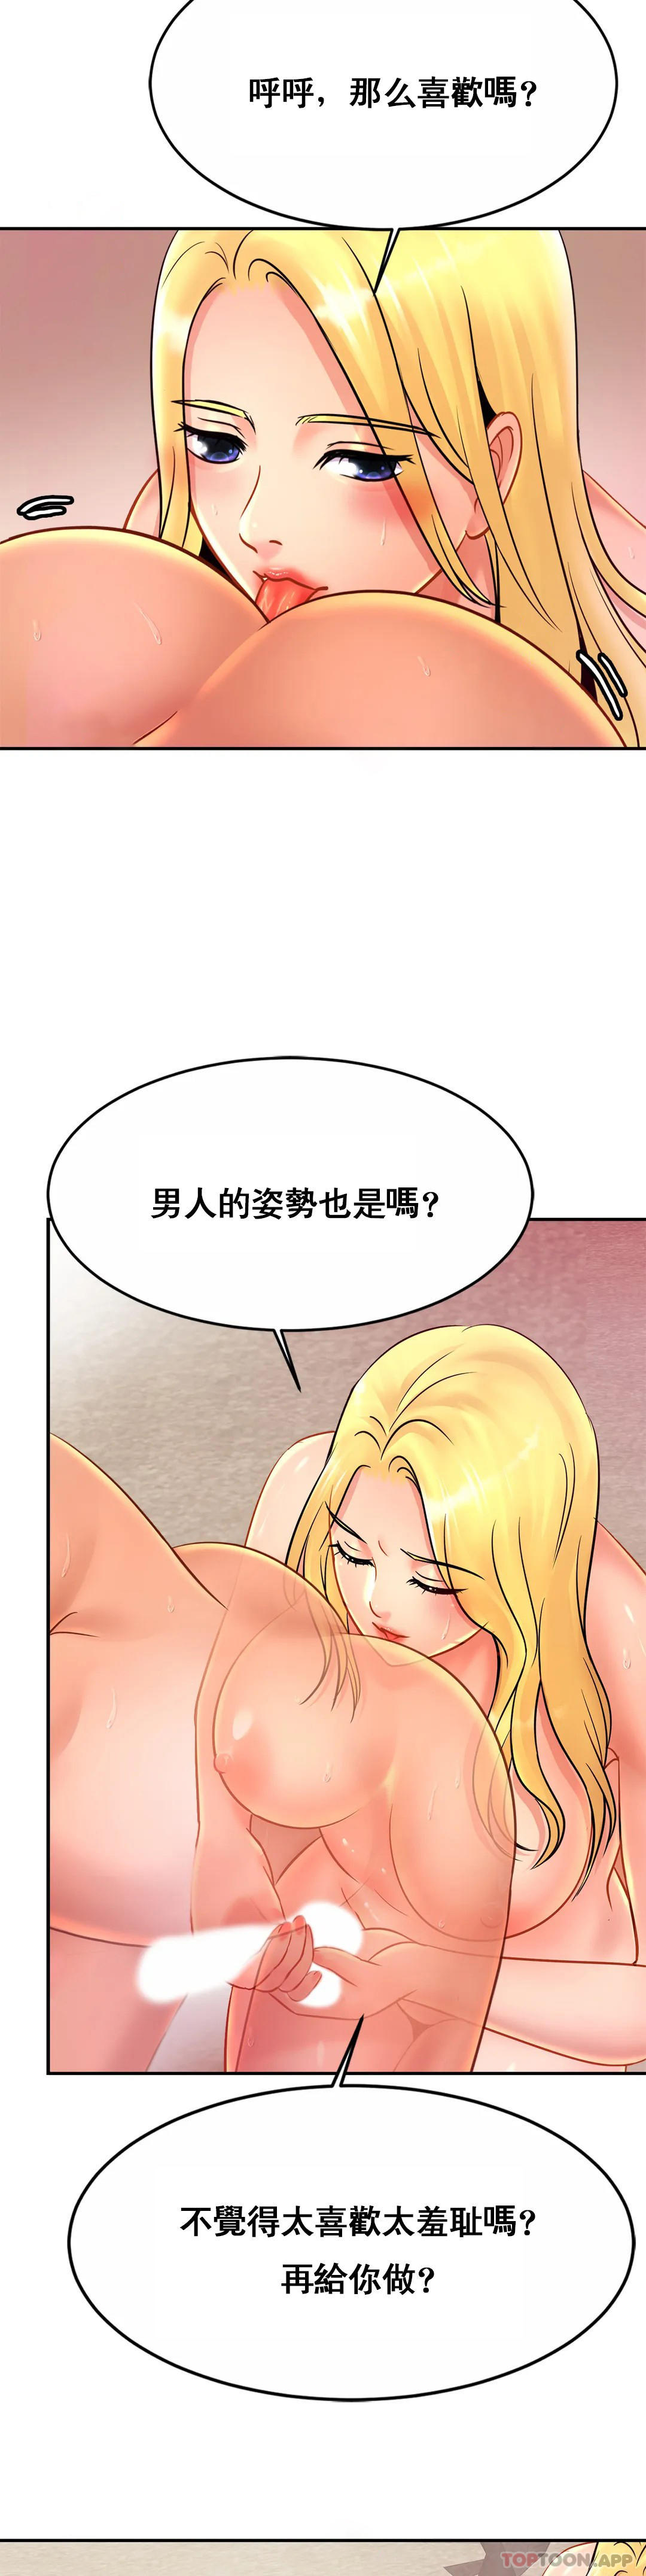 韩国污漫画 親密的傢庭 第29话-好像醉了呀 26